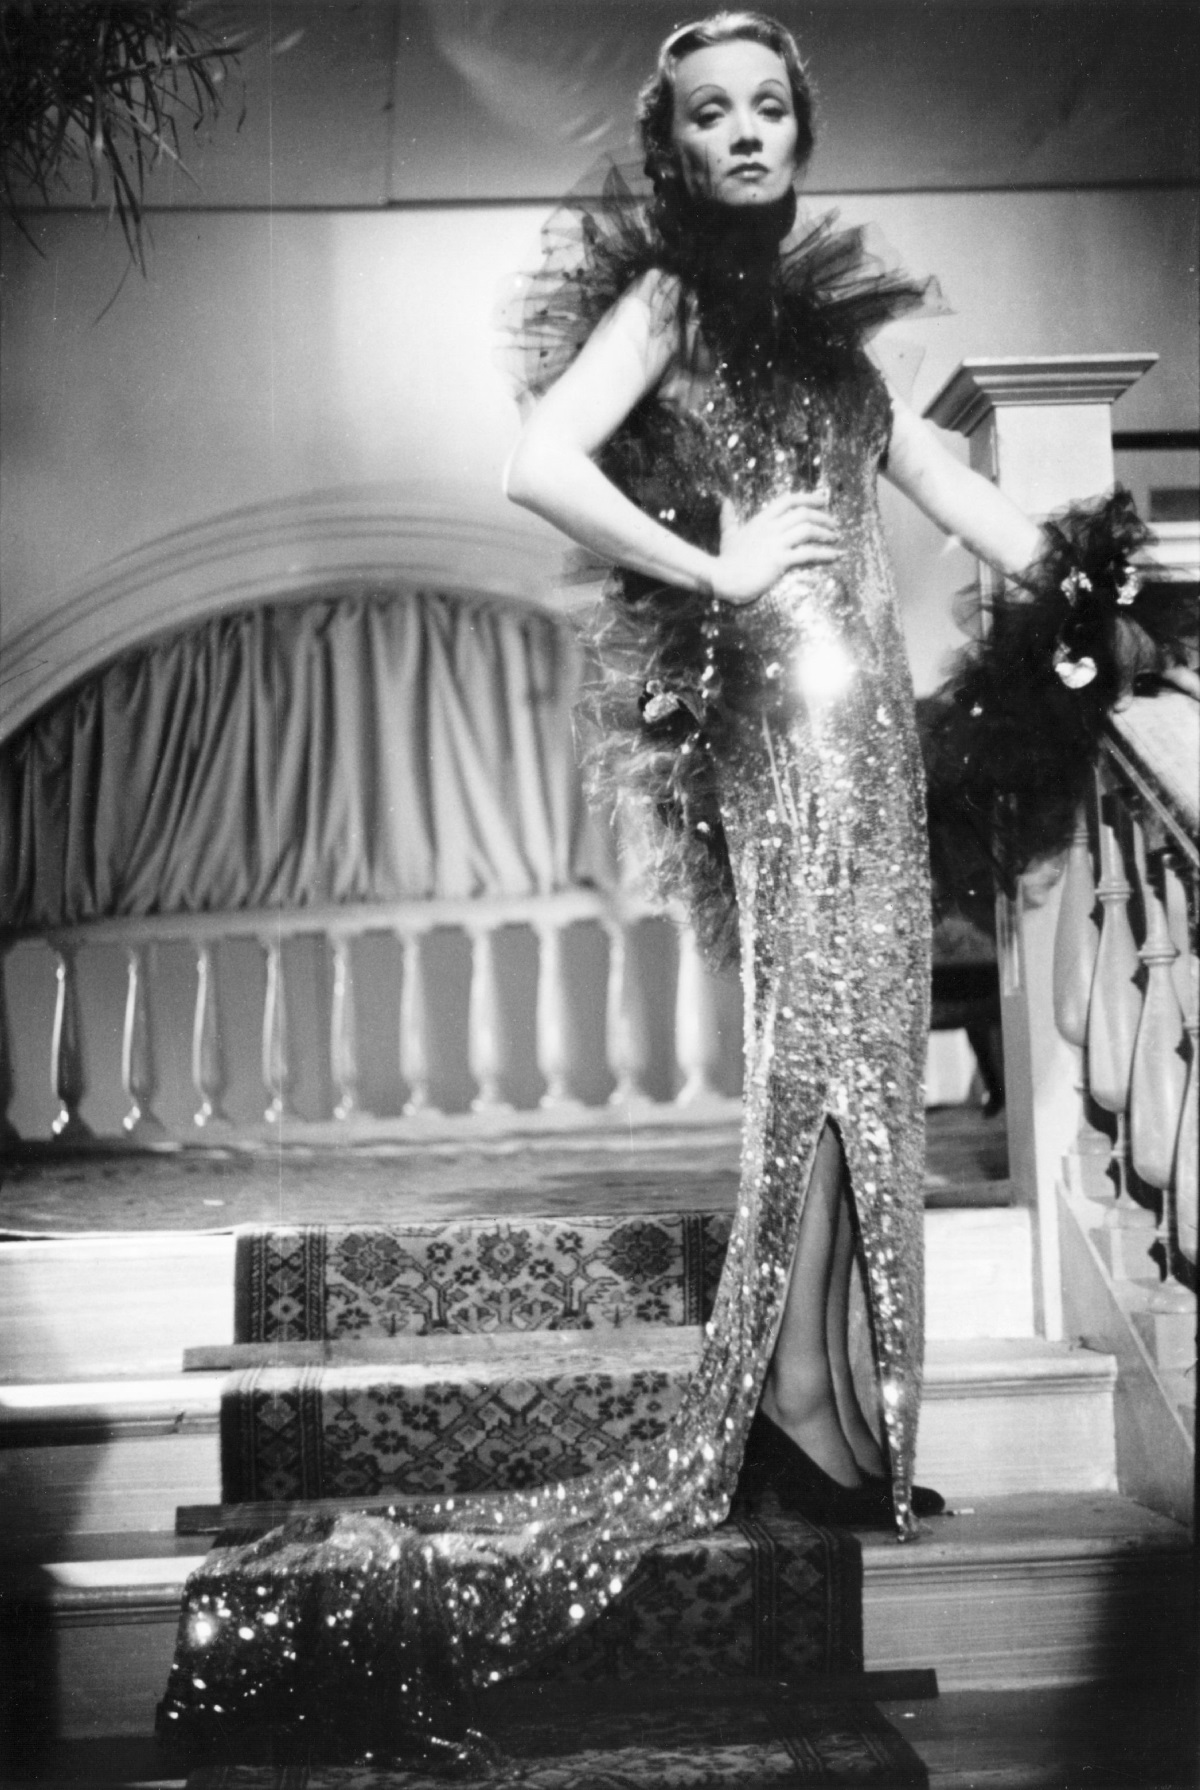 Марлене Дитрих става част от първата германска филмова продукция, в която се говори - "Синият ангел" от 1930 г. Във филма Марлене се превъплъщава в кабаретна певица и танцьорка и става звезда в САЩ